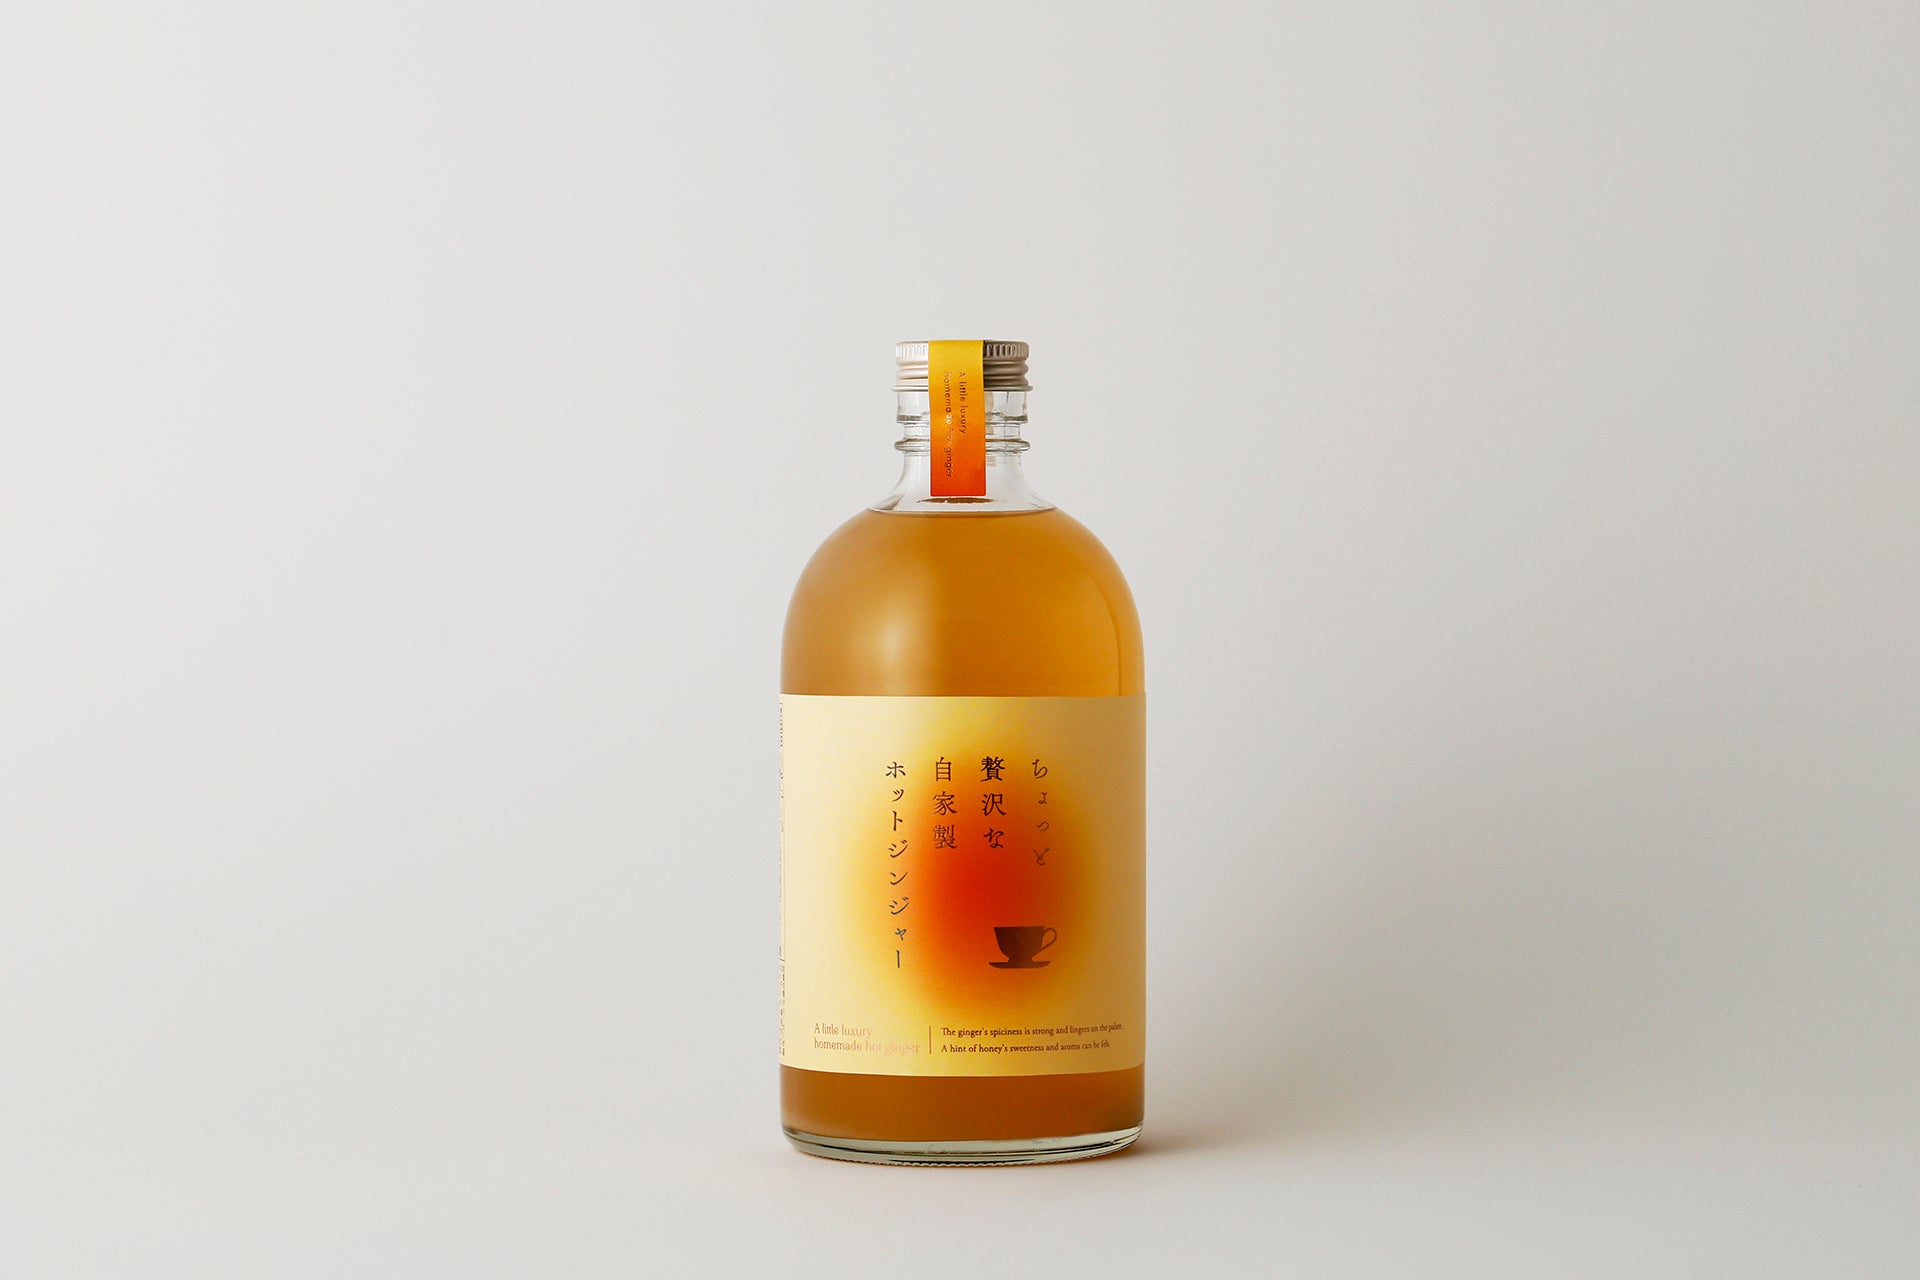 生姜と蜂蜜がふわりと香るホット専用酒「ちょっと贅沢な自家製ホットジンジャー」が新登場